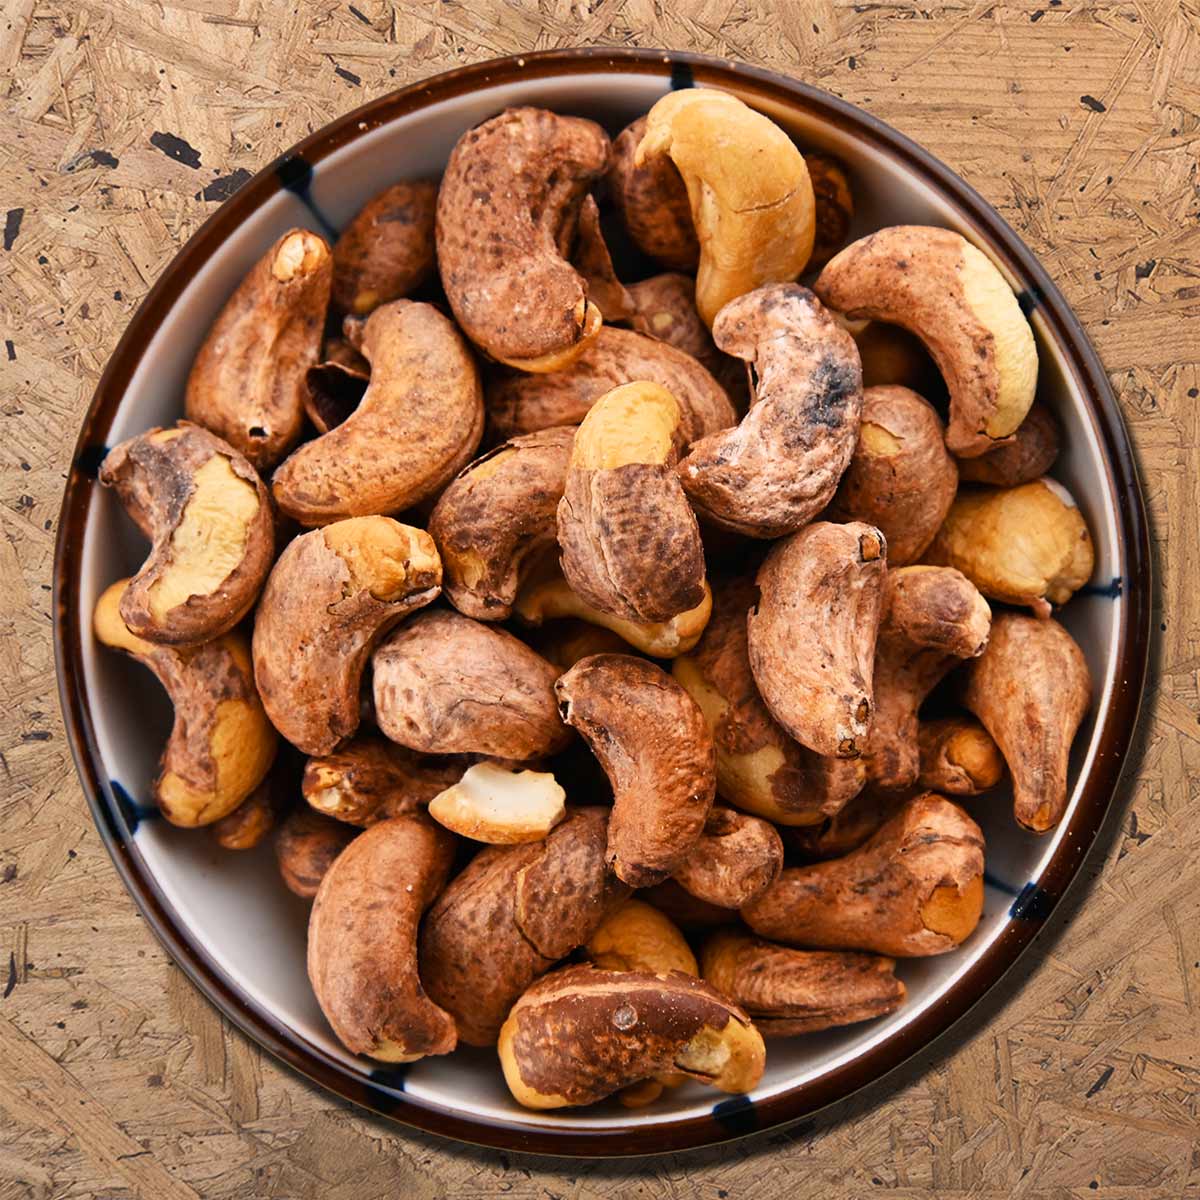 Geröstete Cashewnüsse (englisch: borma cashew, geröstete Cashewnüsse mit Haut) sind Cashewkerne mit einer Seidenschale, die mit sehr viel Salz geröstet werden.